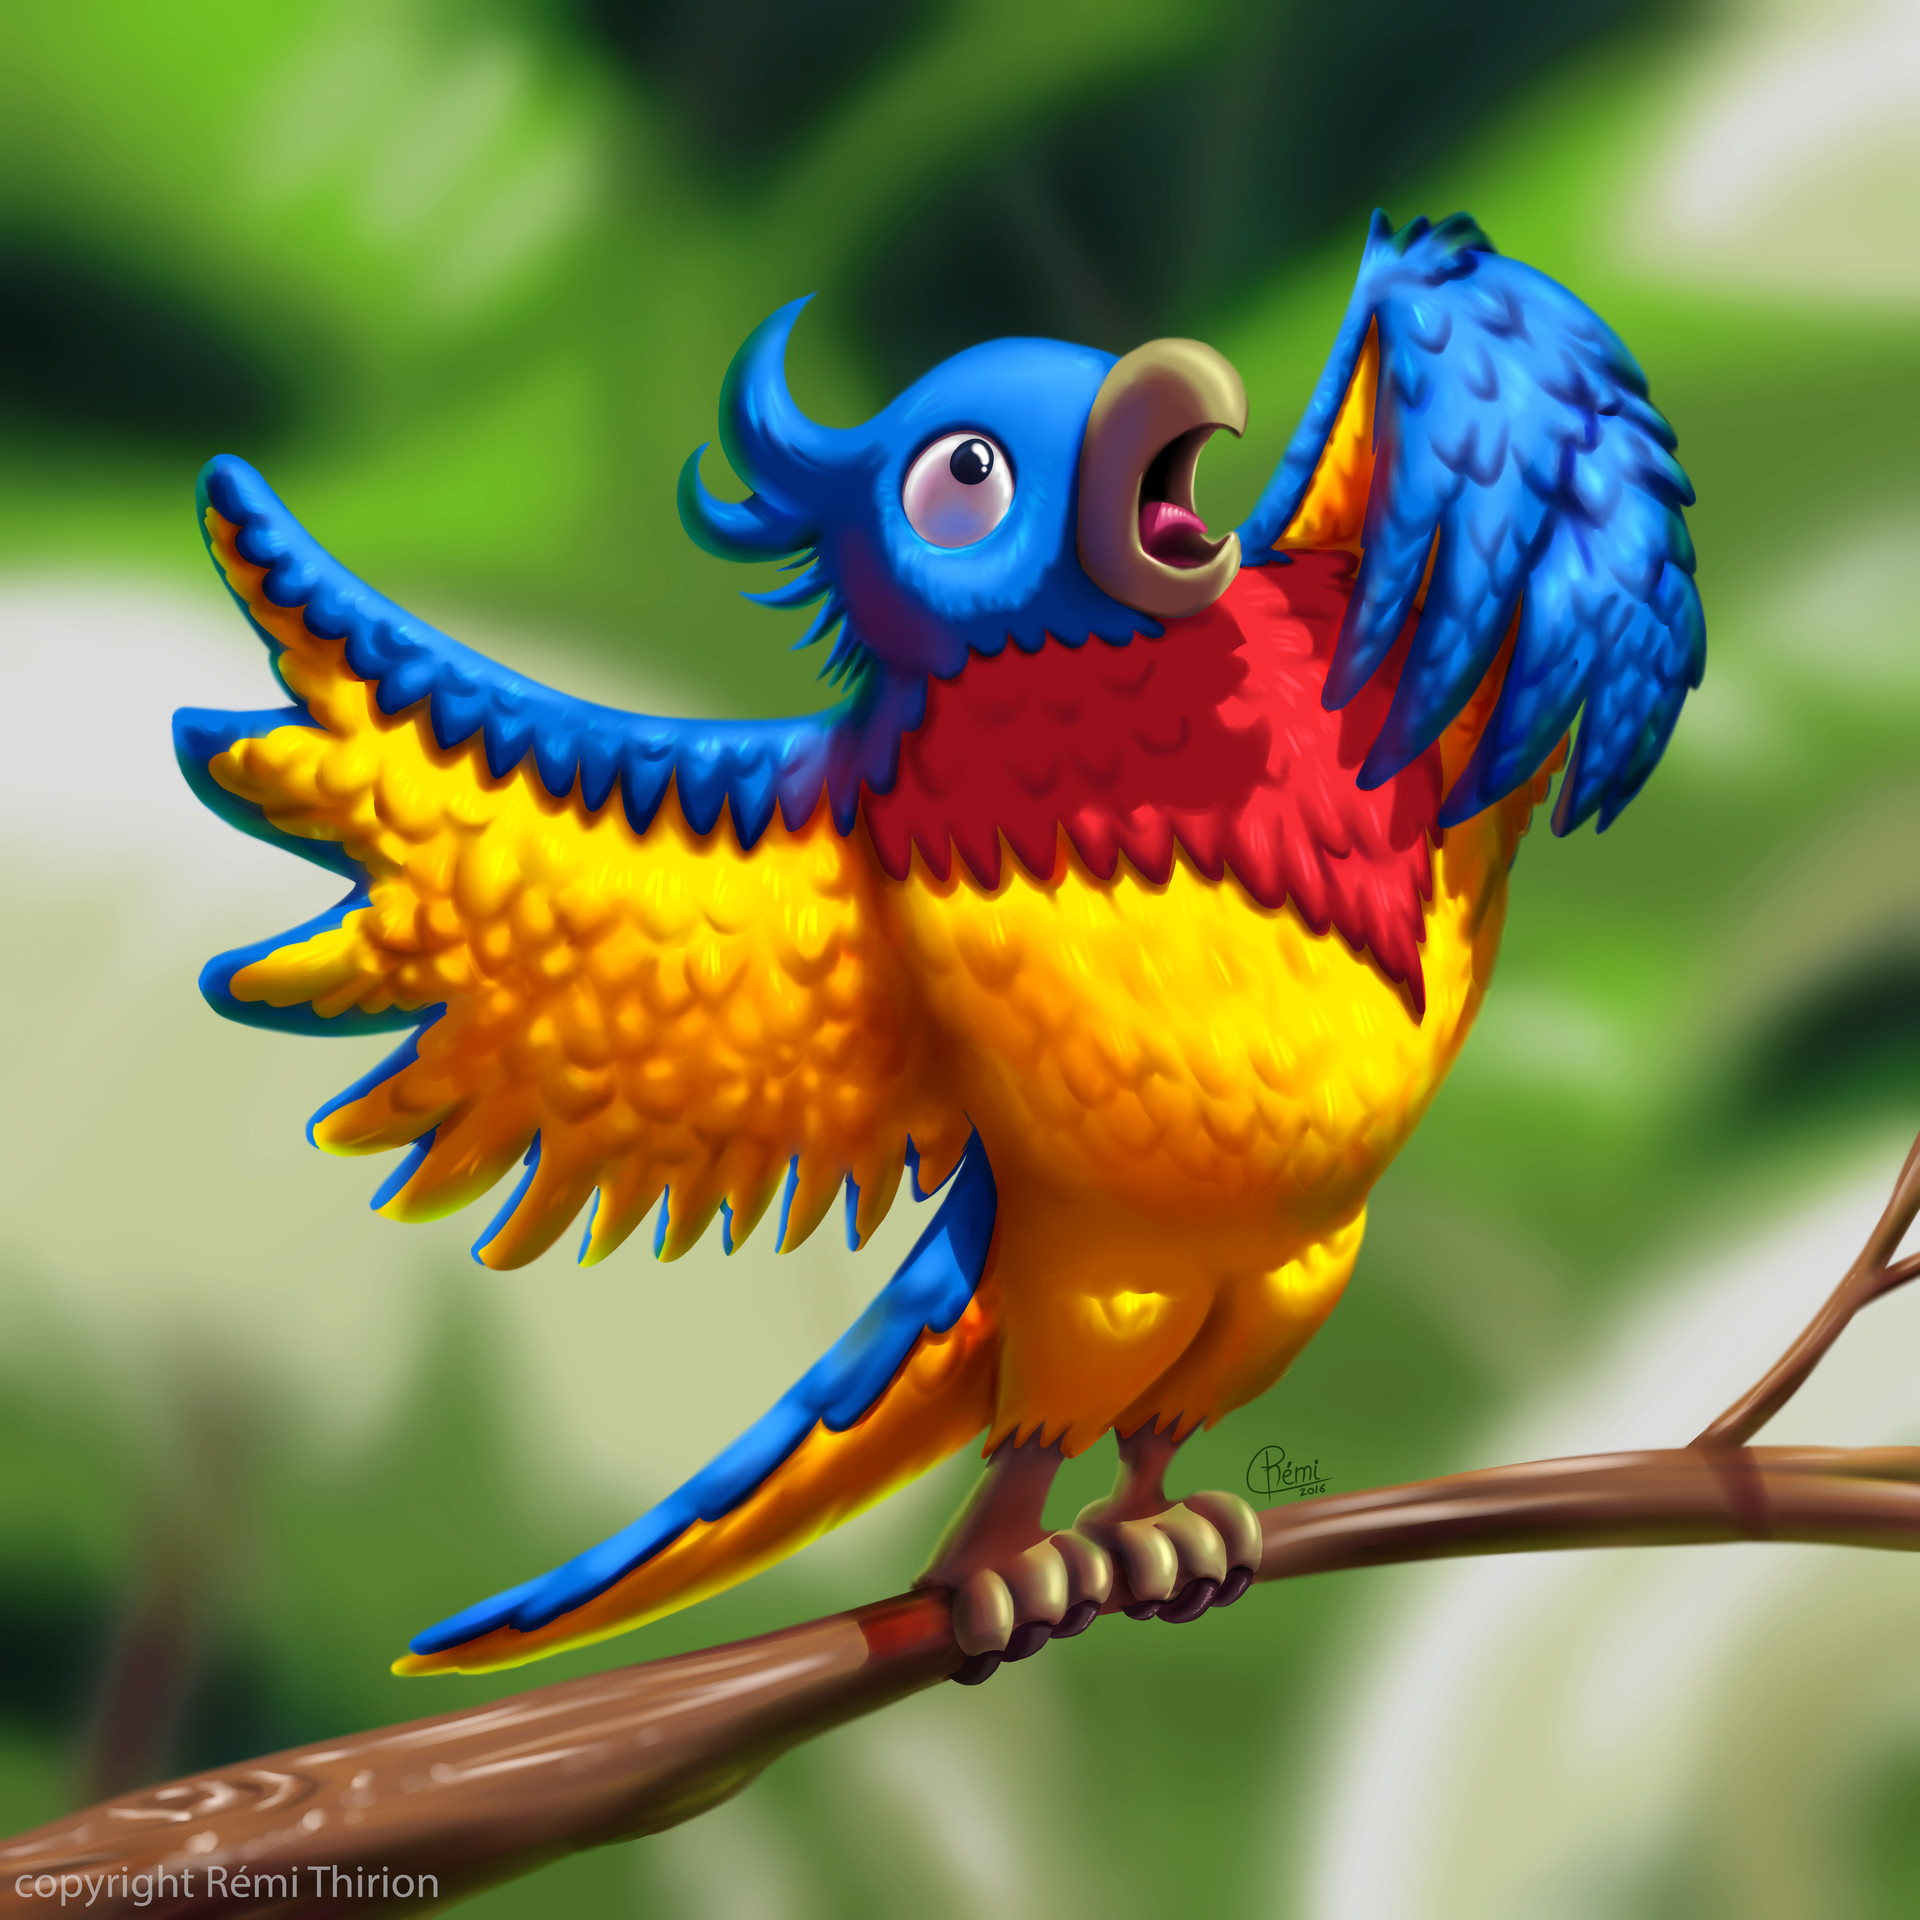 ArtStation - Parrot